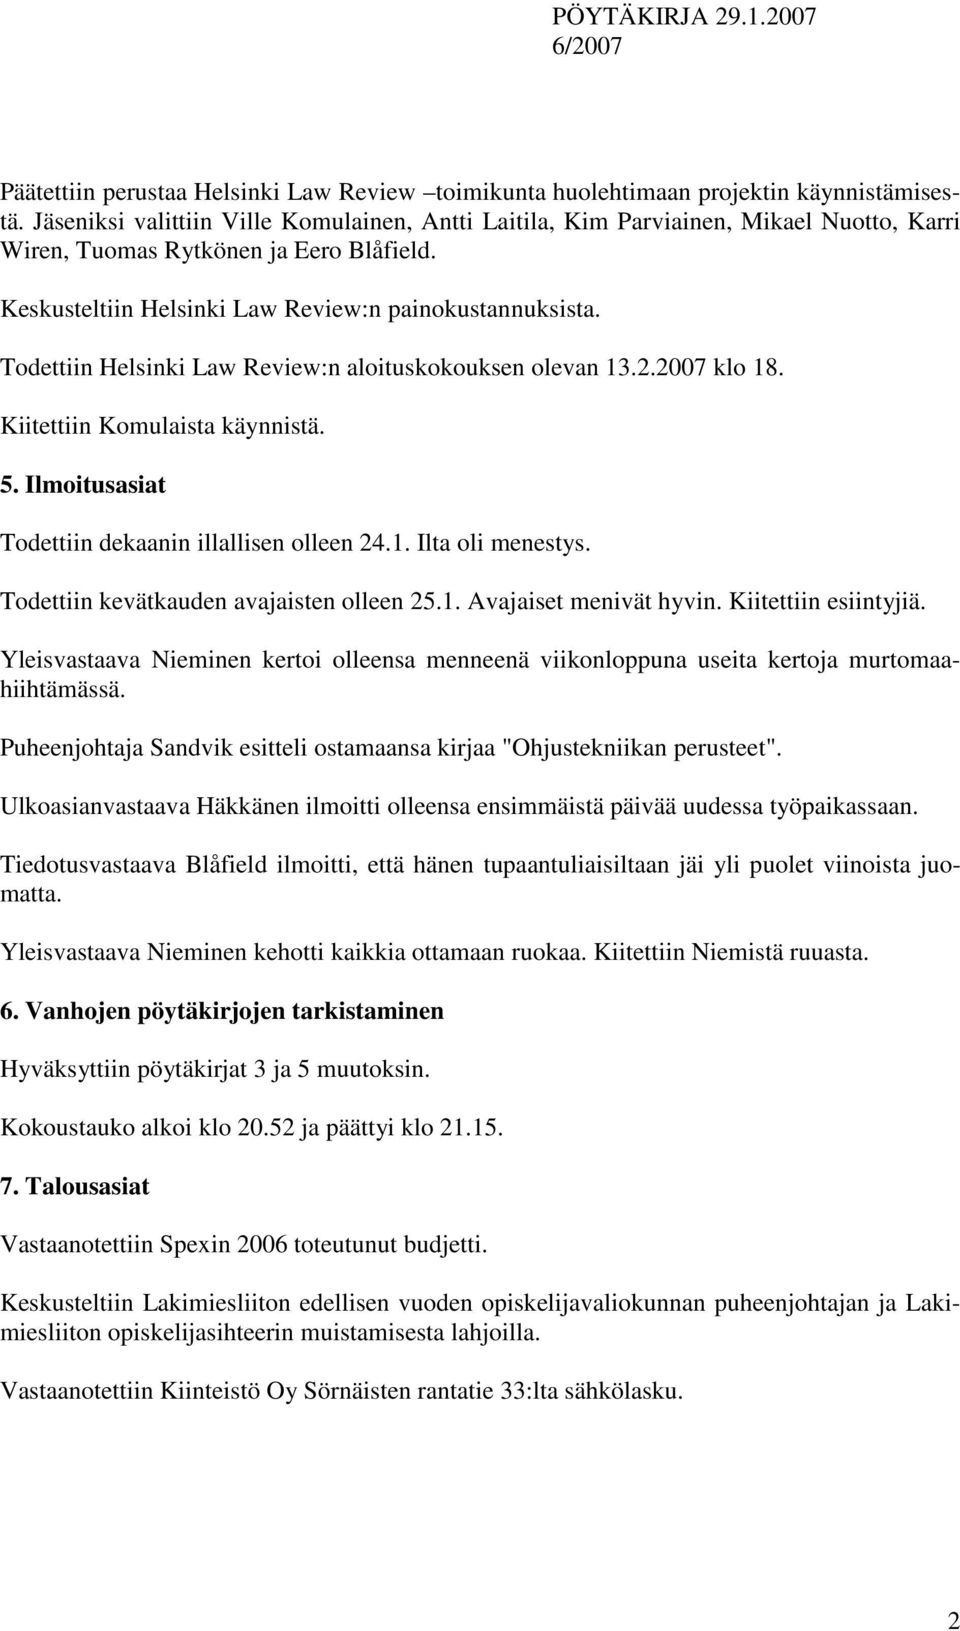 Todettiin Helsinki Law Review:n aloituskokouksen olevan 13.2.2007 klo 18. Kiitettiin Komulaista käynnistä. 5. Ilmoitusasiat Todettiin dekaanin illallisen olleen 24.1. Ilta oli menestys.